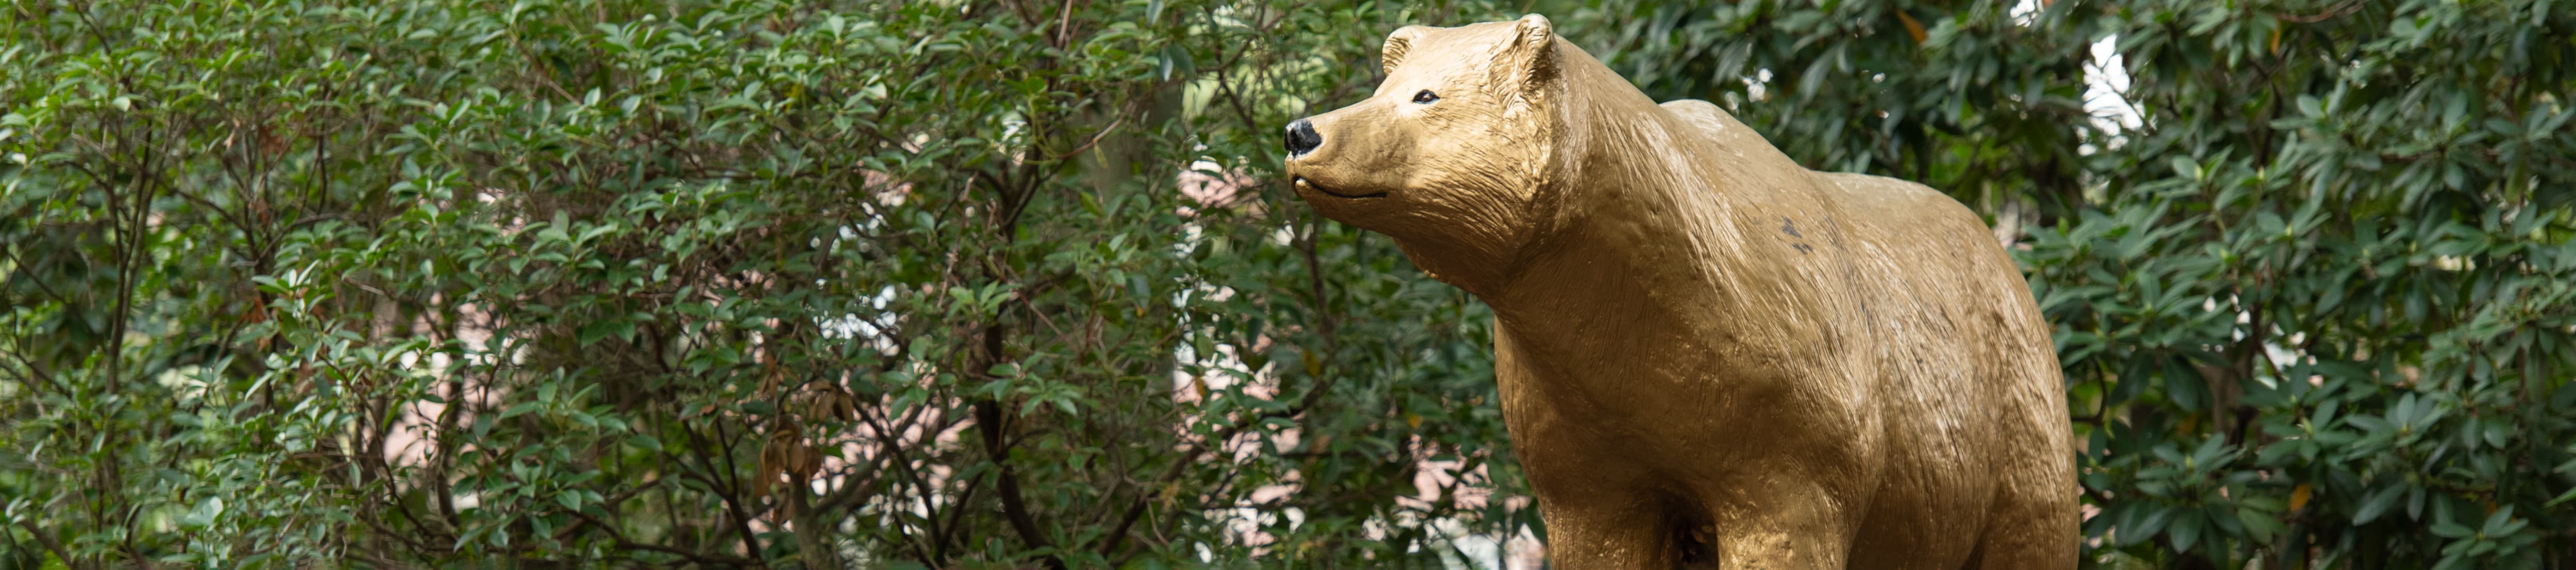 Golden Bear statue